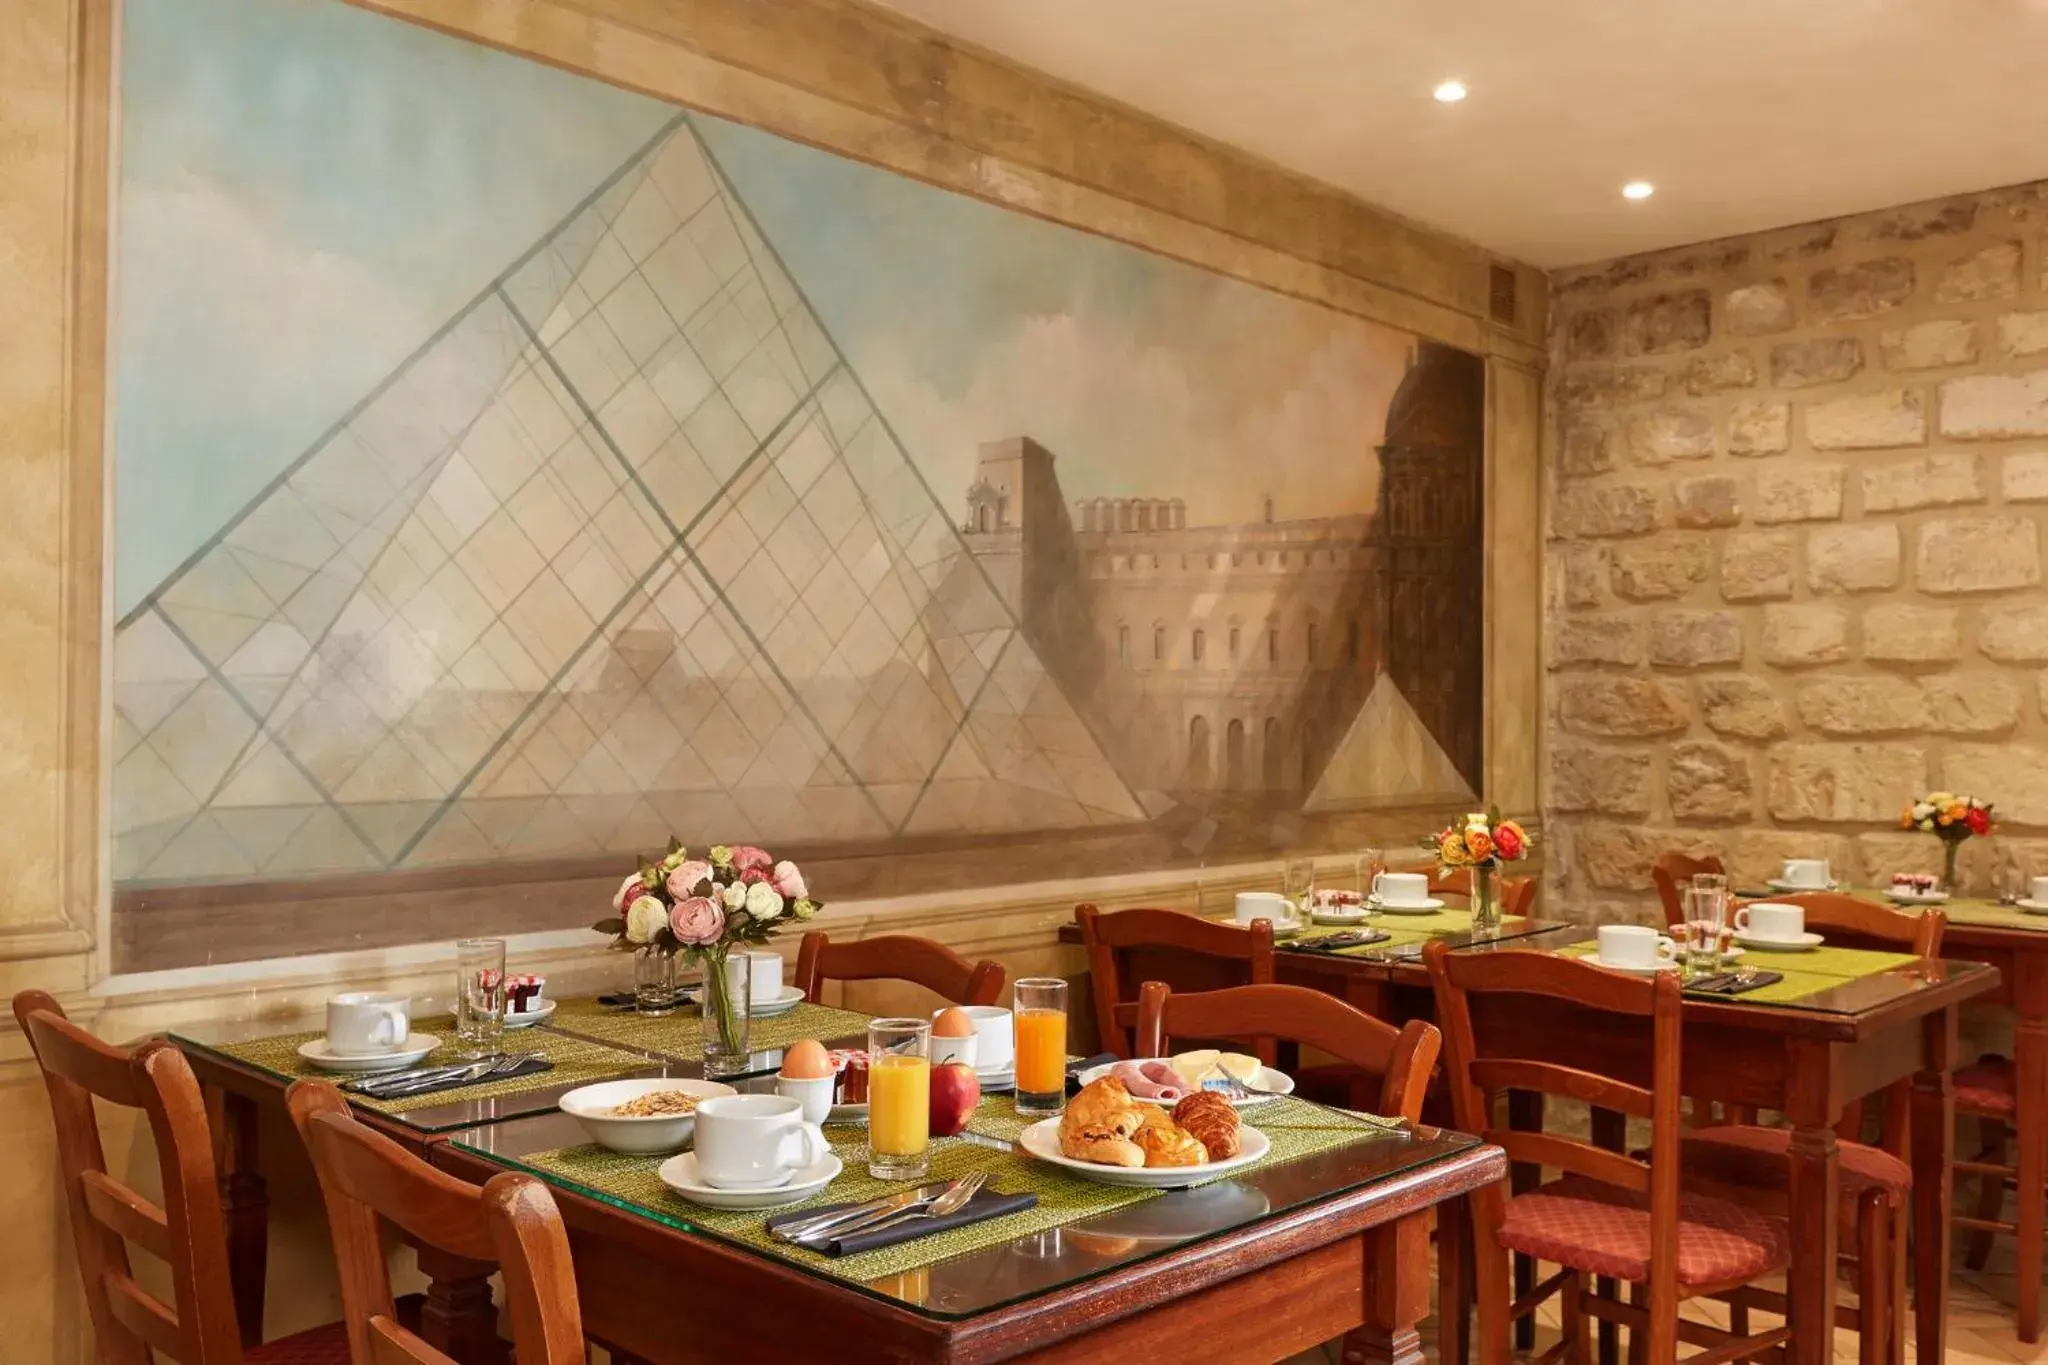 Breakfast, Restaurant/Places to Eat in Montparnasse Daguerre